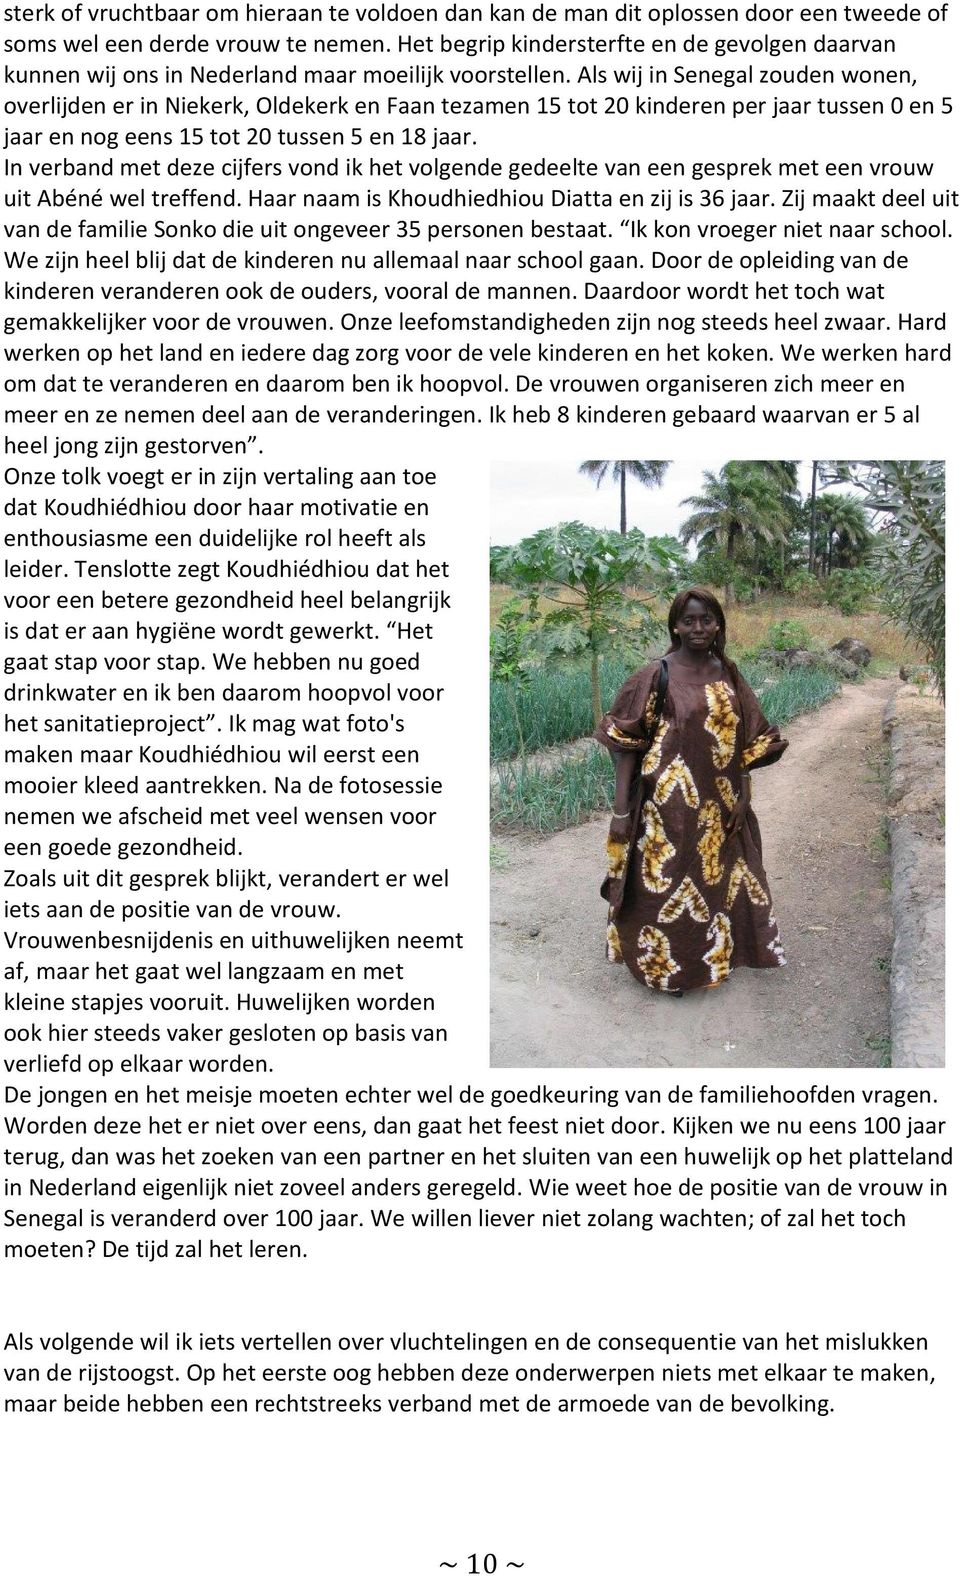 Als wij in Senegal zouden wonen, overlijden er in Niekerk, Oldekerk en Faan tezamen 15 tot 20 kinderen per jaar tussen 0 en 5 jaar en nog eens 15 tot 20 tussen 5 en 18 jaar.